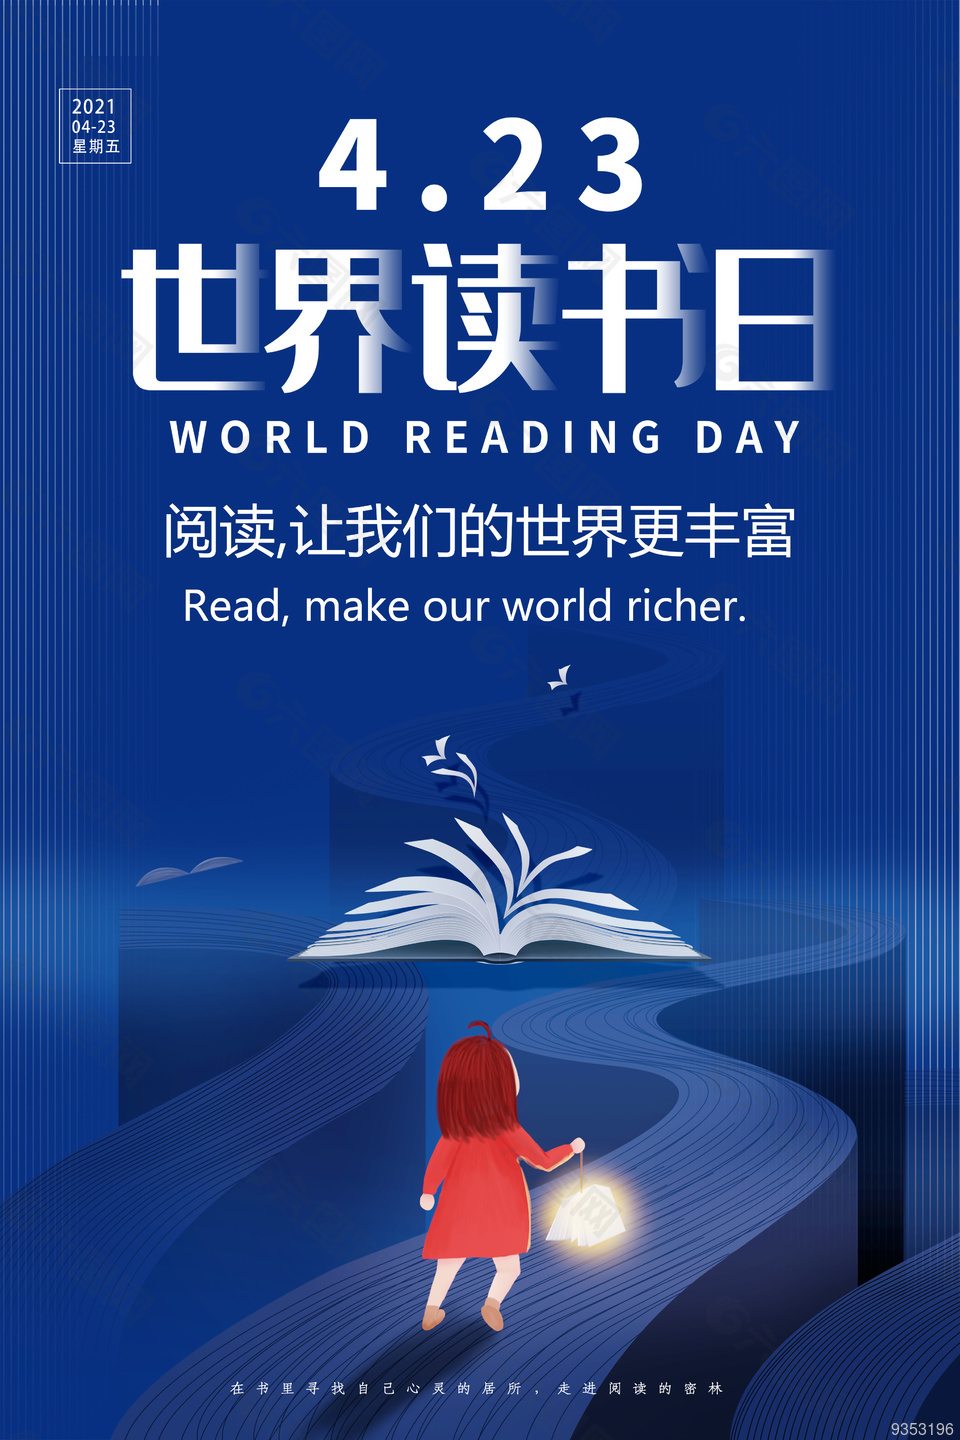 423世界读书日